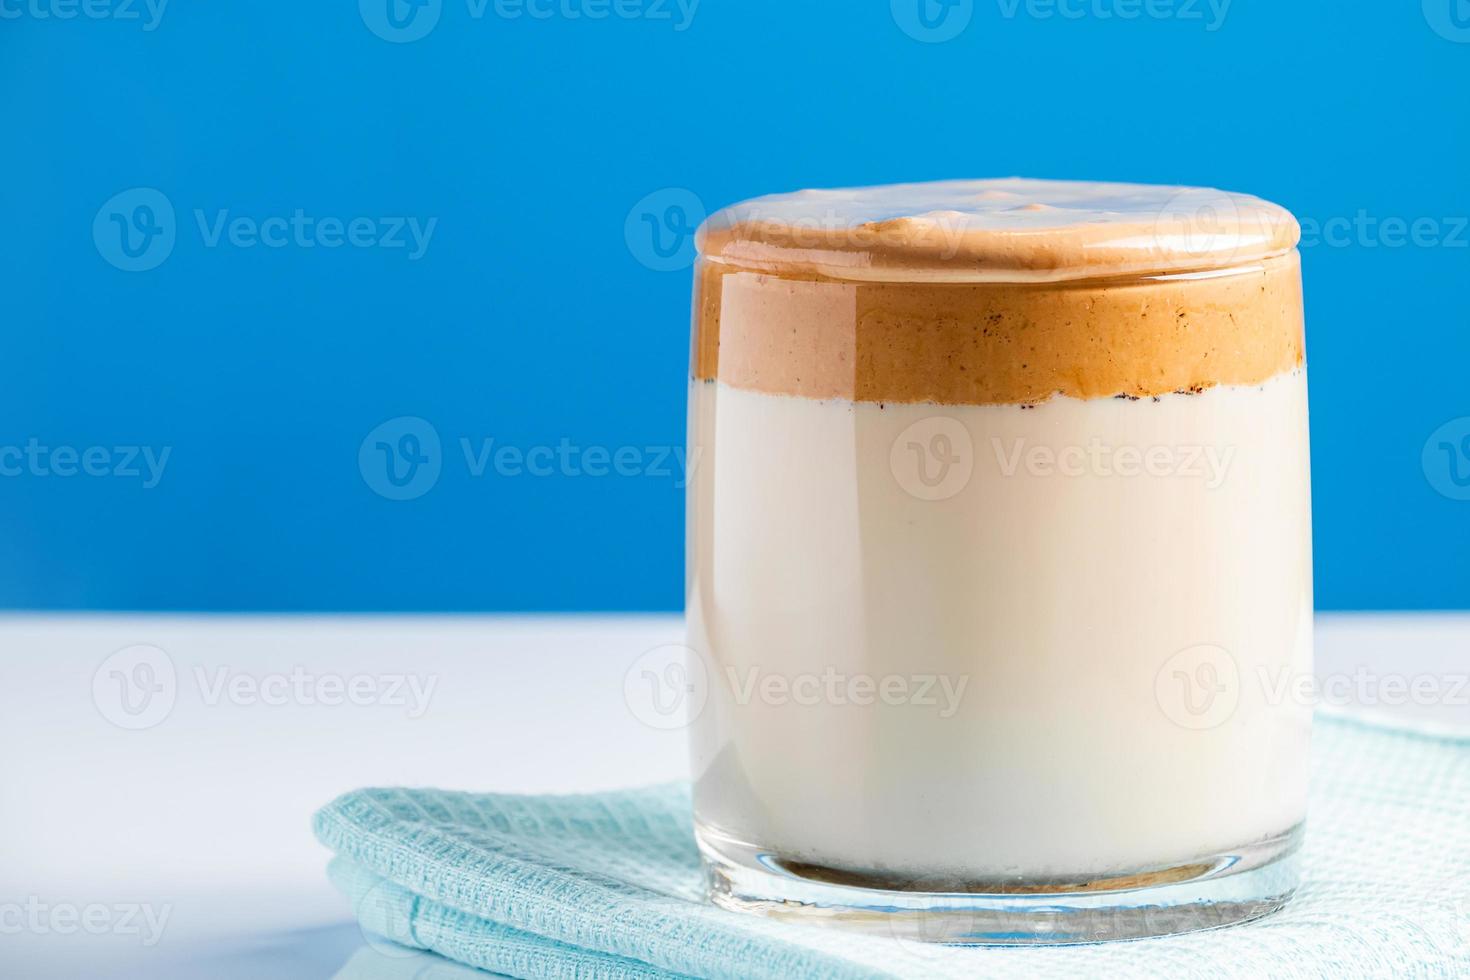 café dalgona sur fond bleu tendance mode boisson de lait et mousse fouettée sucrée photo